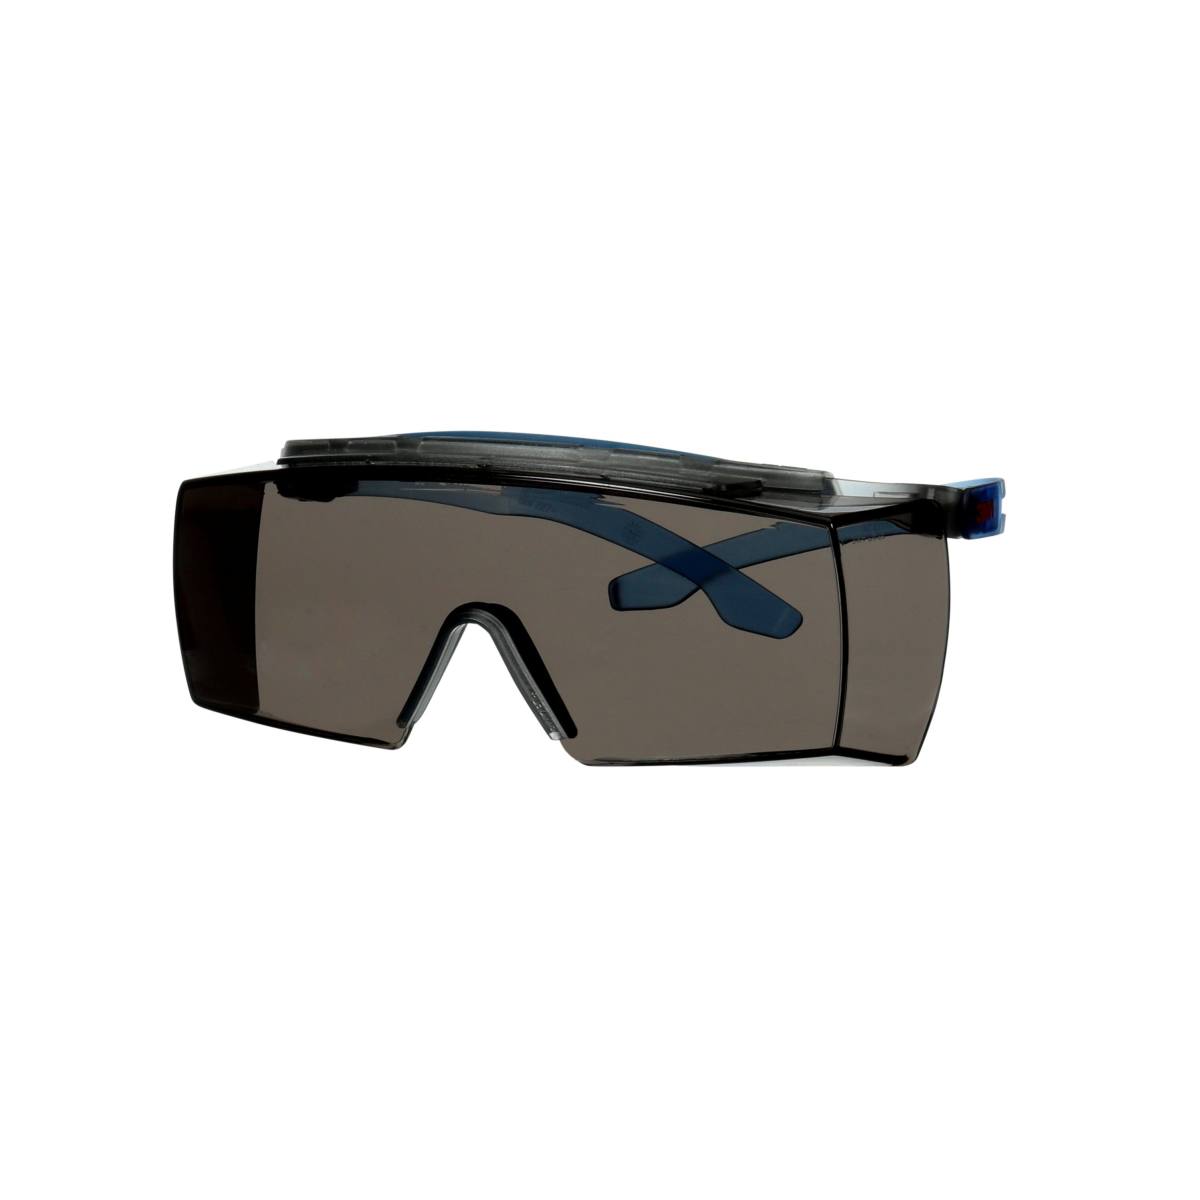 3M SecureFit 3700 Überbrille, blaue Bügel, integrierter Augenbrauenschutz, Scotchgard Anti-Beschlag Beschichtung (K&N), graue Scheibe, winkelverstellbar, SF3702XSGAF-BLU-EU